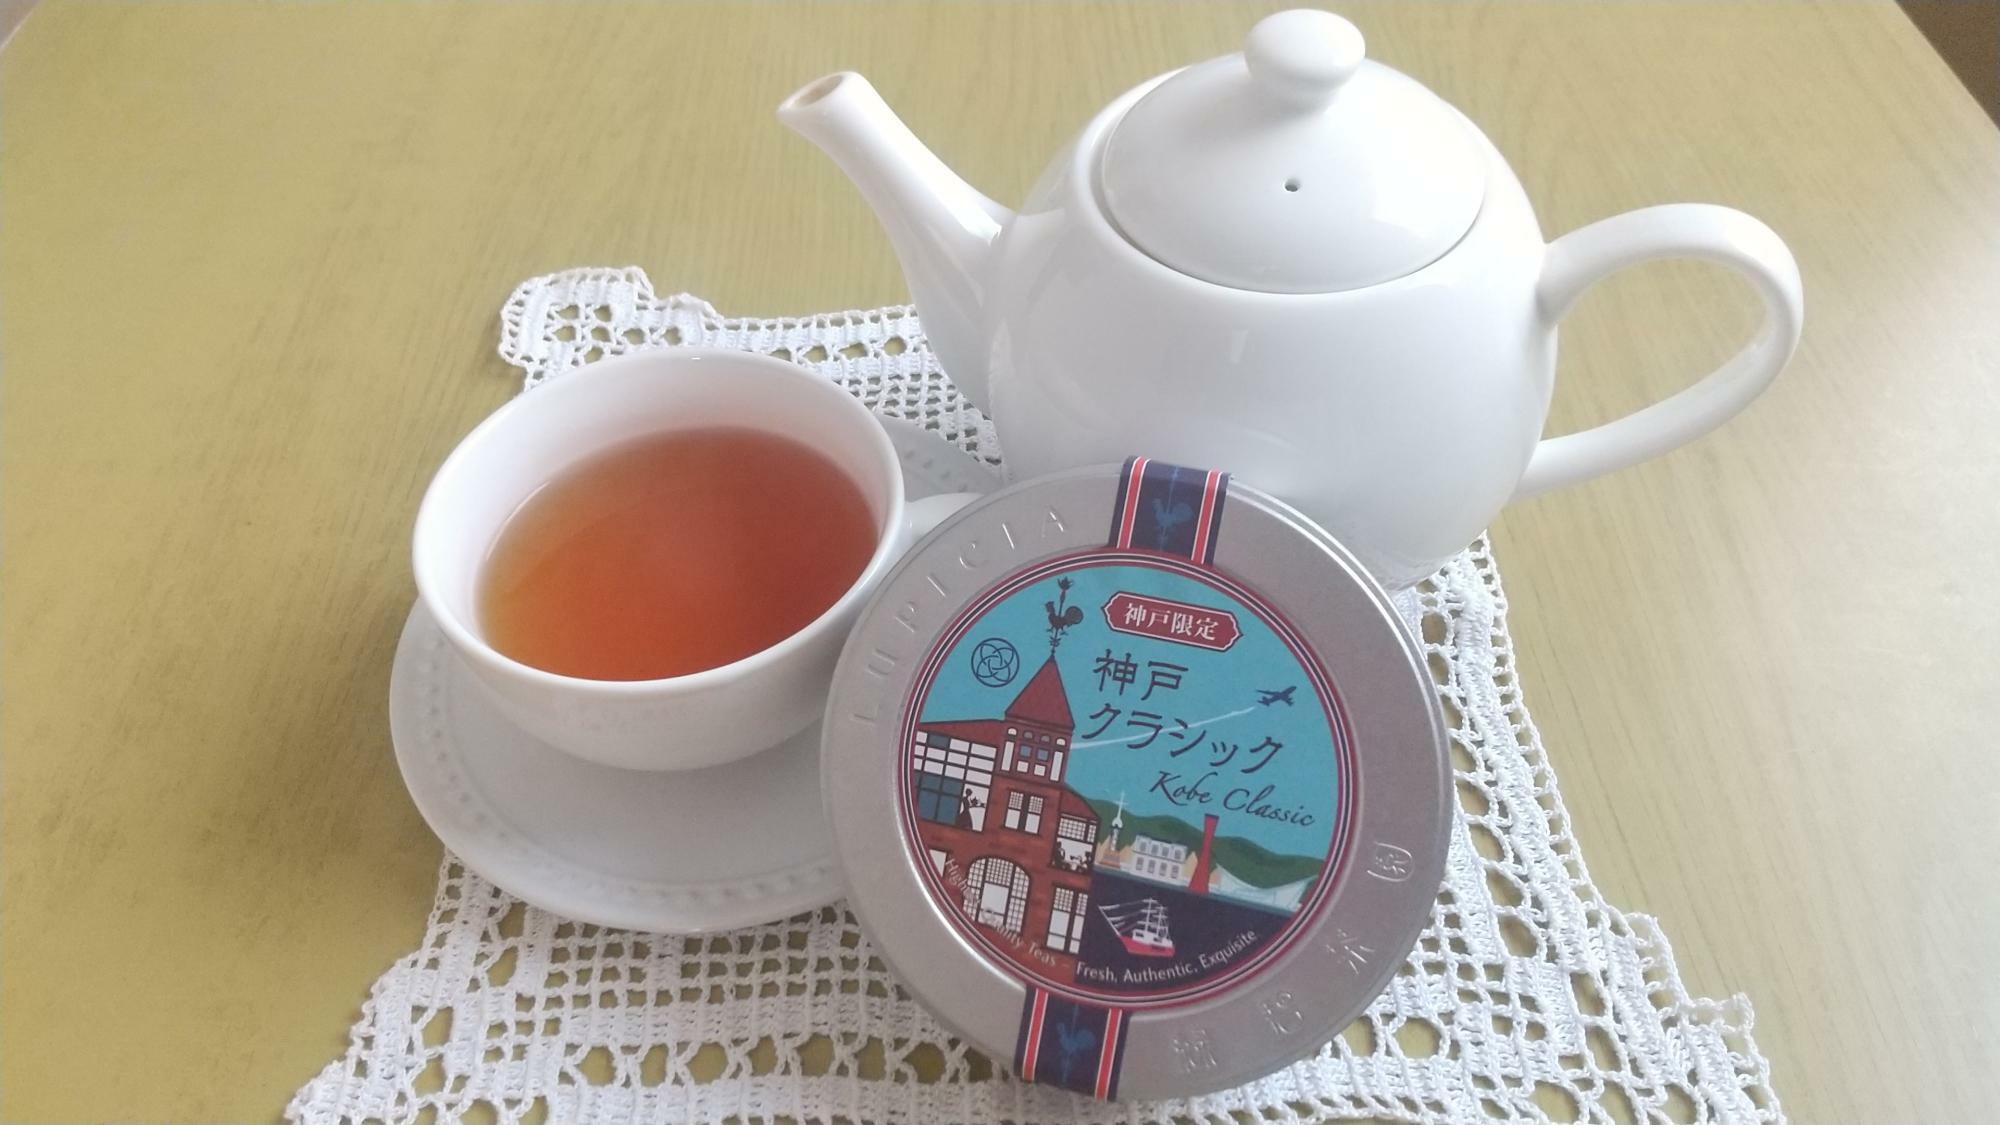 ルピシア神戸限定のお茶「神戸クラシック」